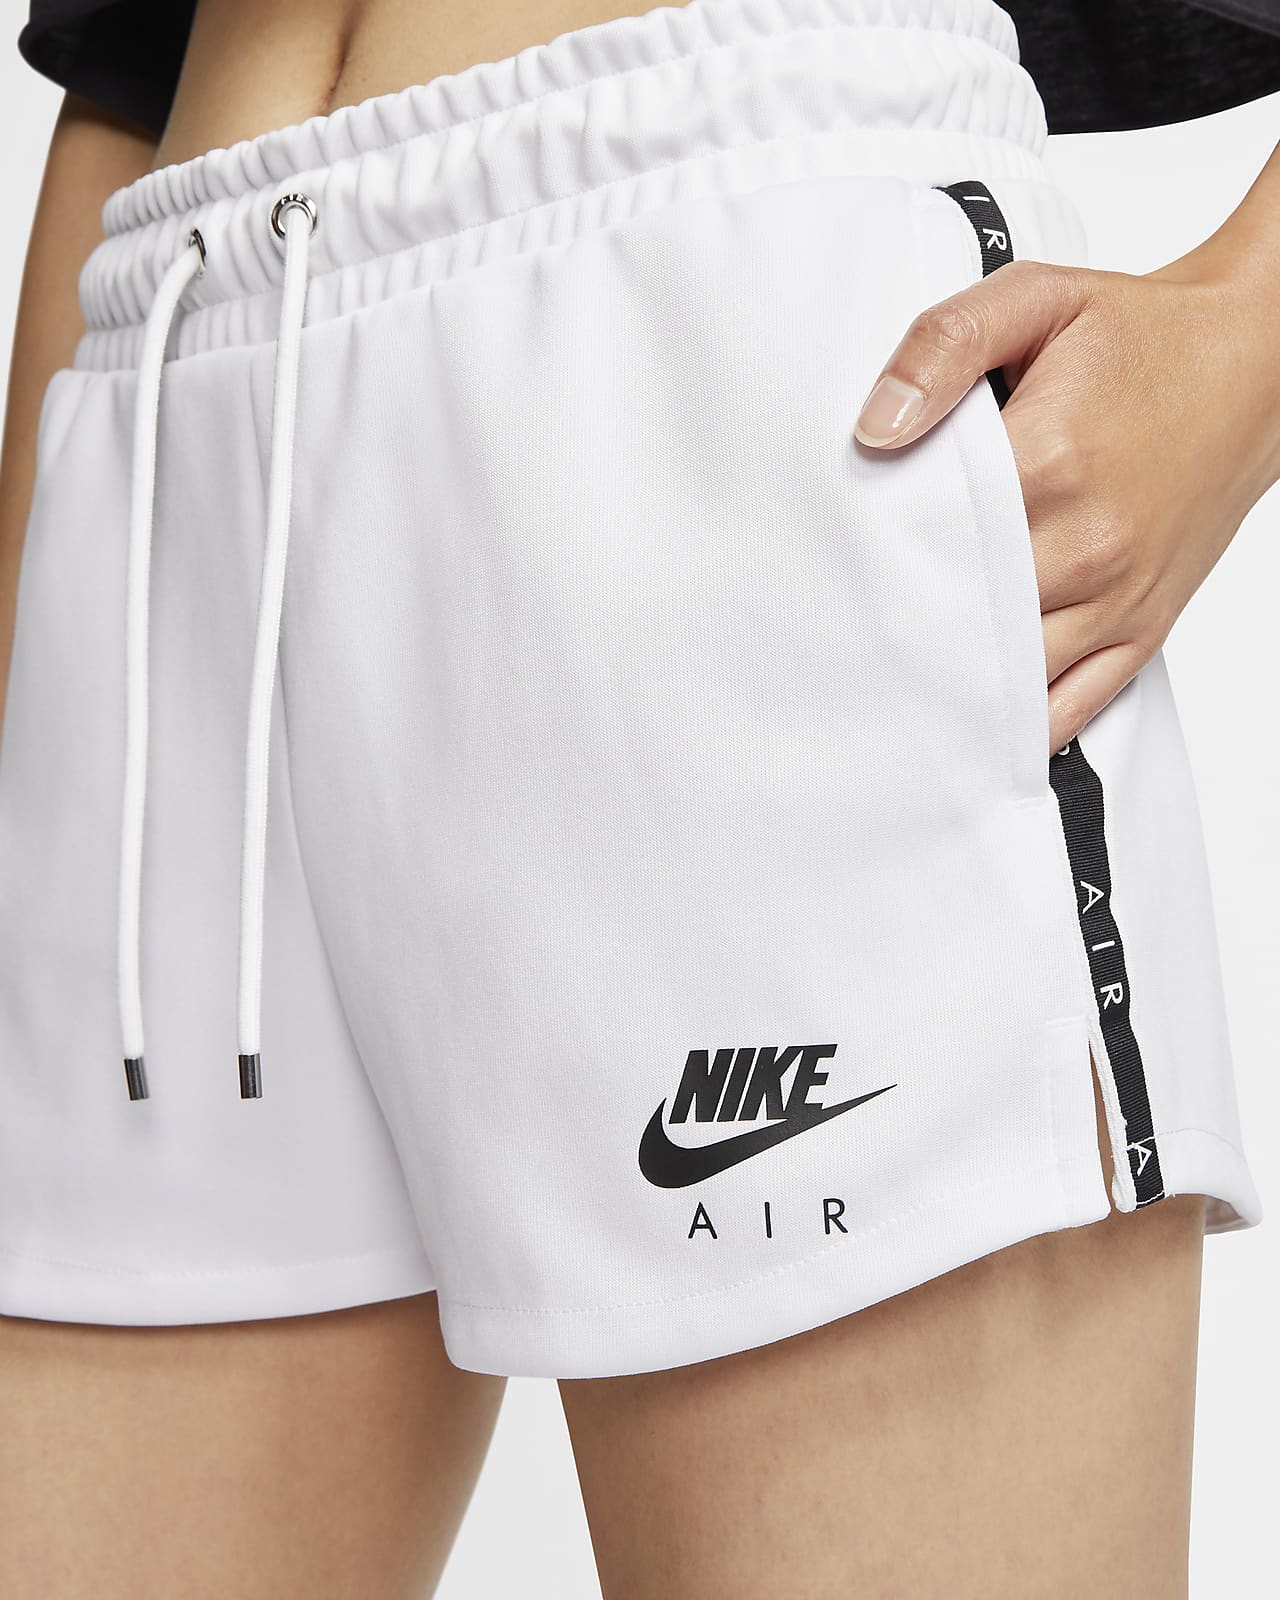 nike air womens shorts